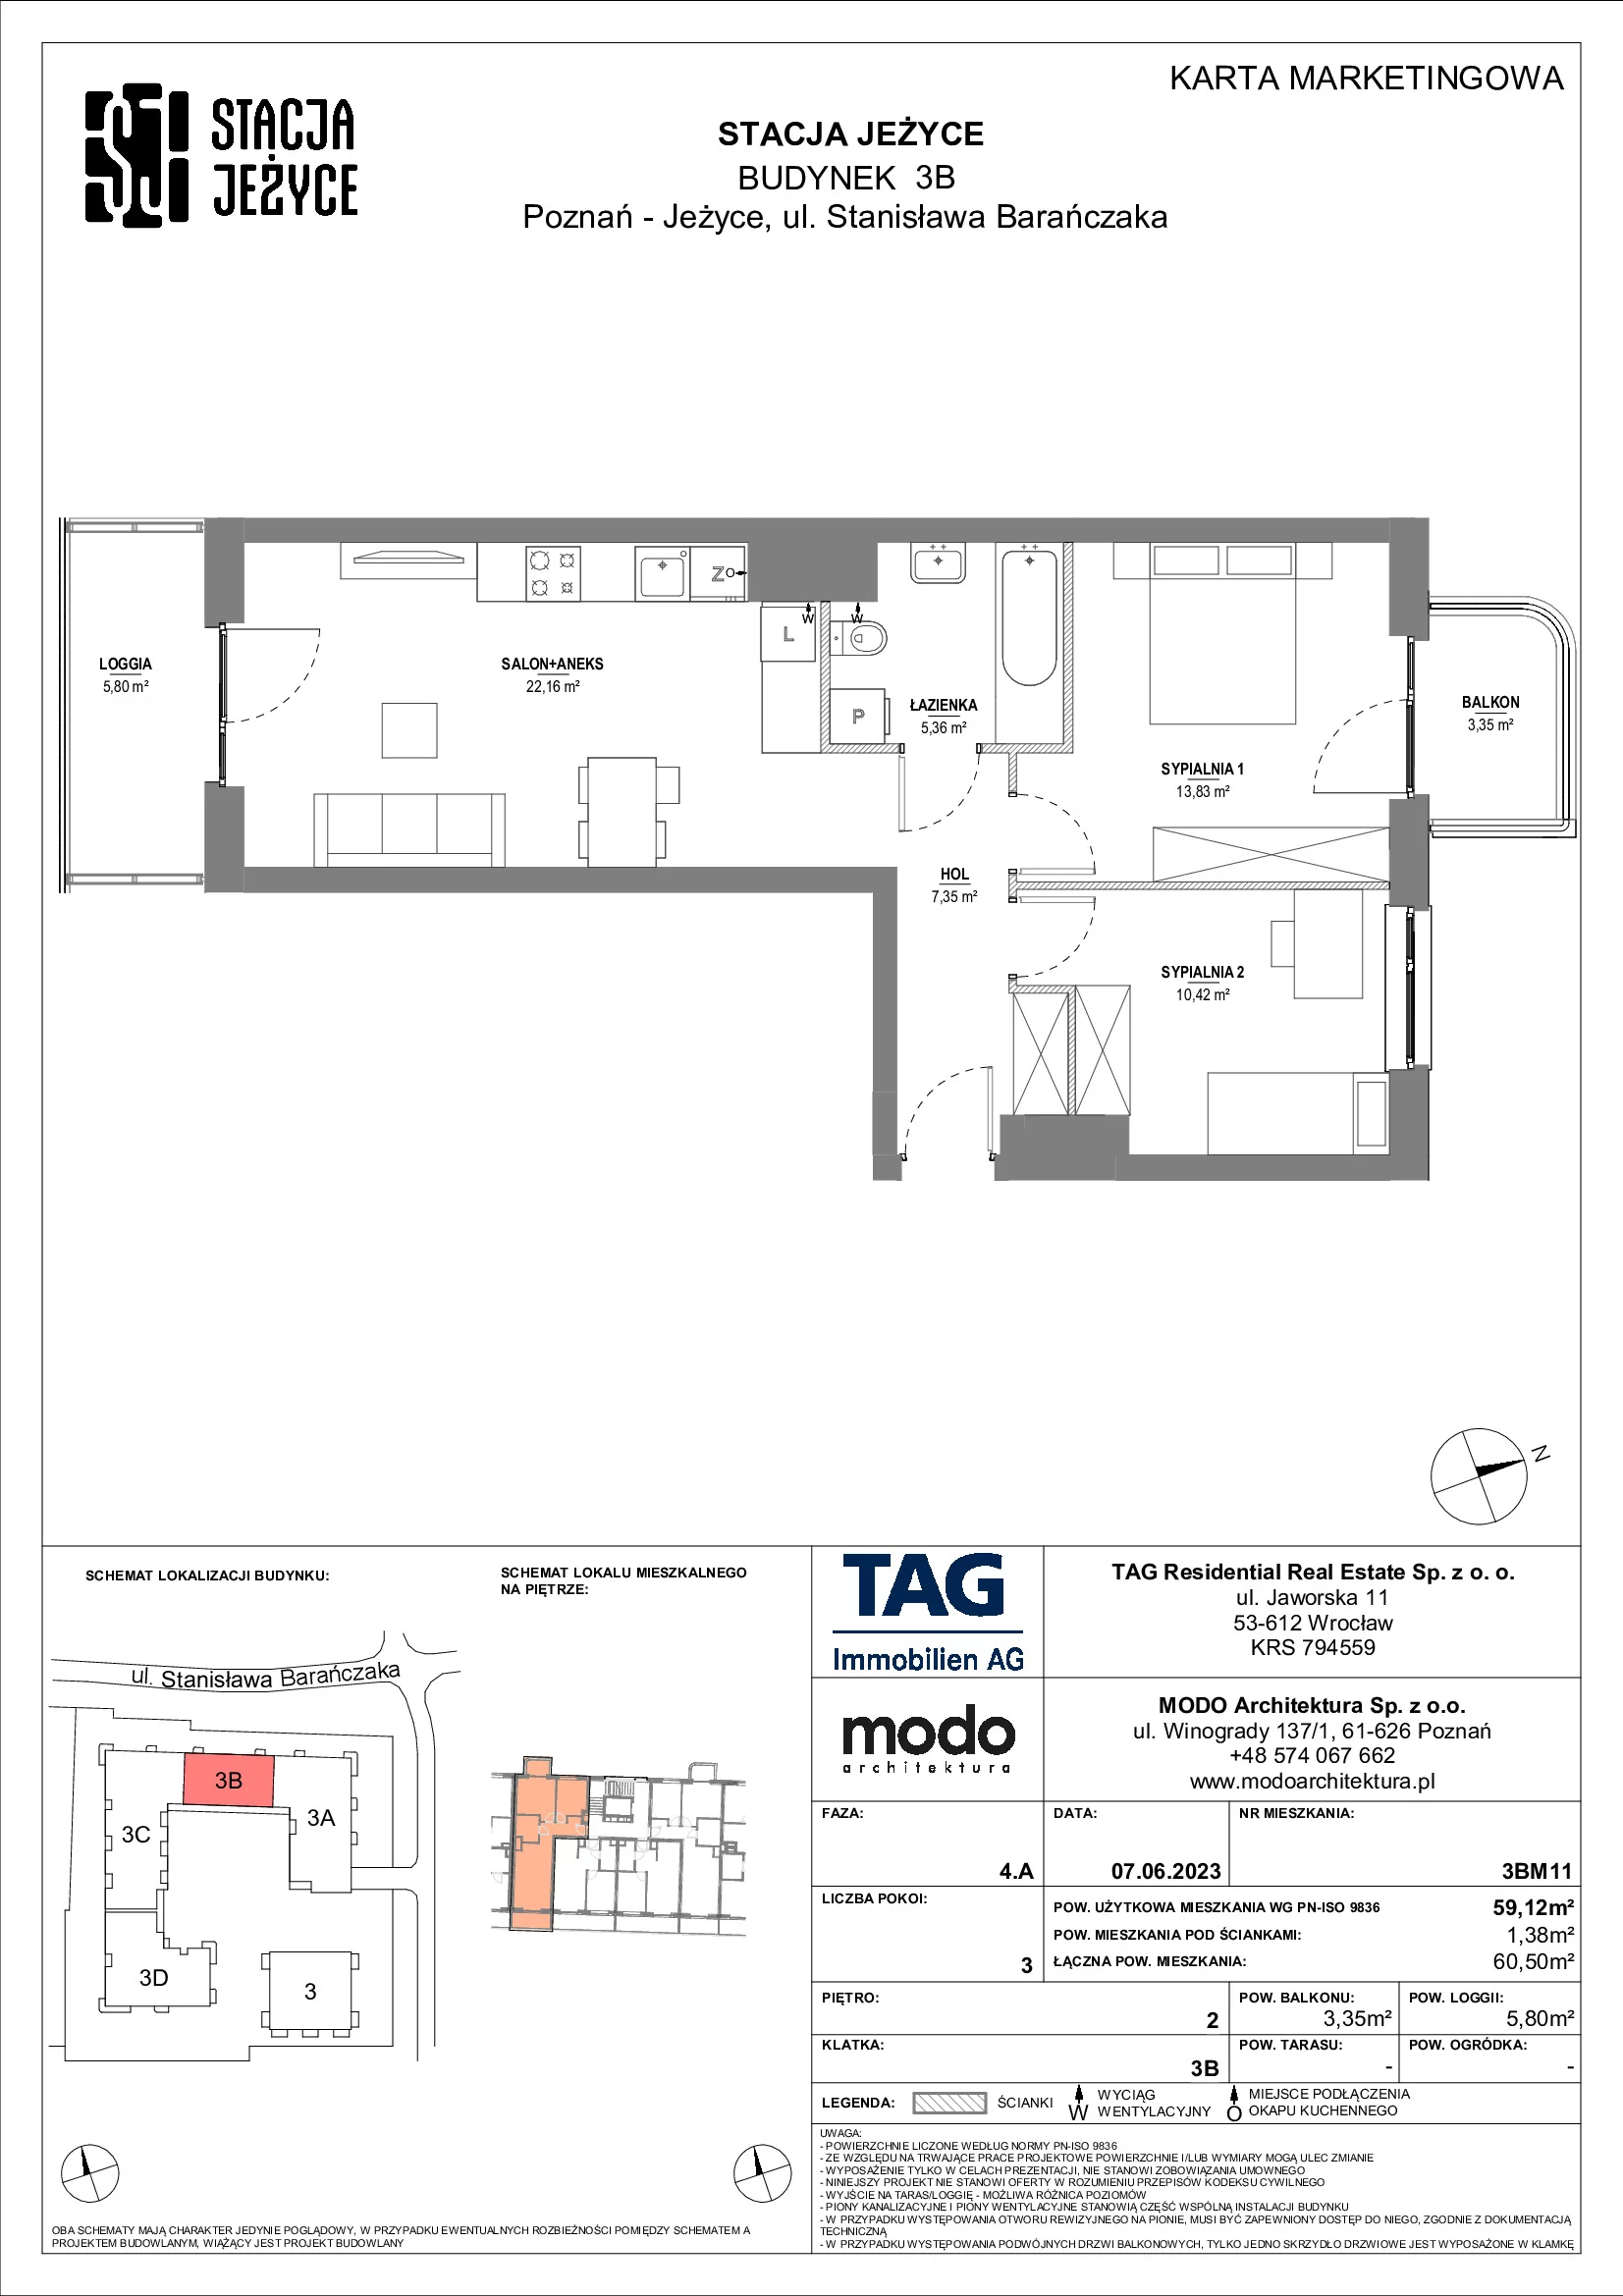 Mieszkanie 59,12 m², piętro 2, oferta nr 3BM11, Stacja Jeżyce, Poznań, Jeżyce, Jeżyce, ul. Stanisława Barańczaka 3